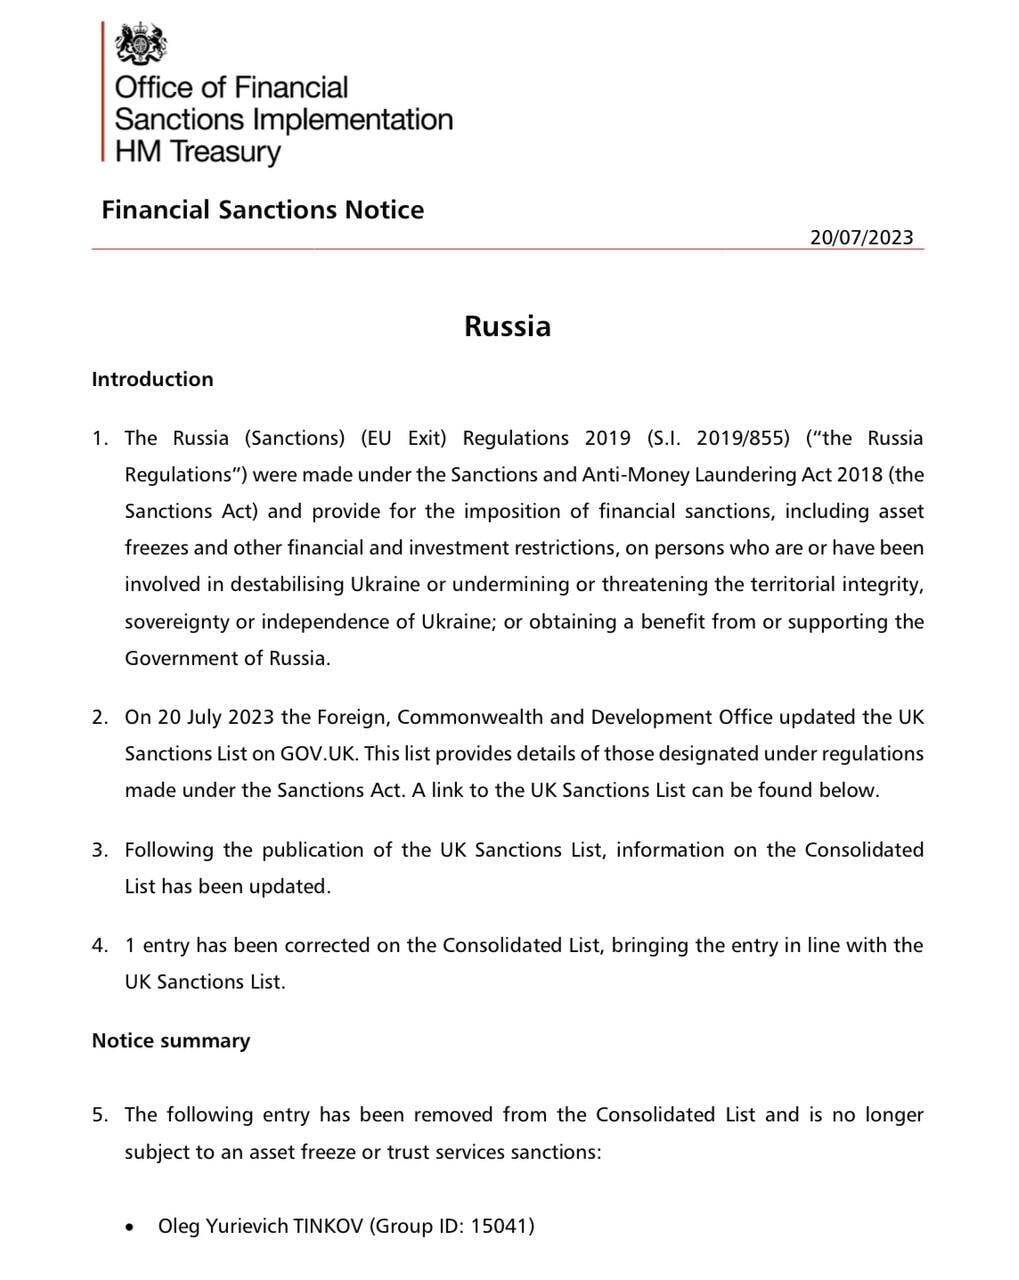 Рішення про виключення Тінькова із списку санкцій